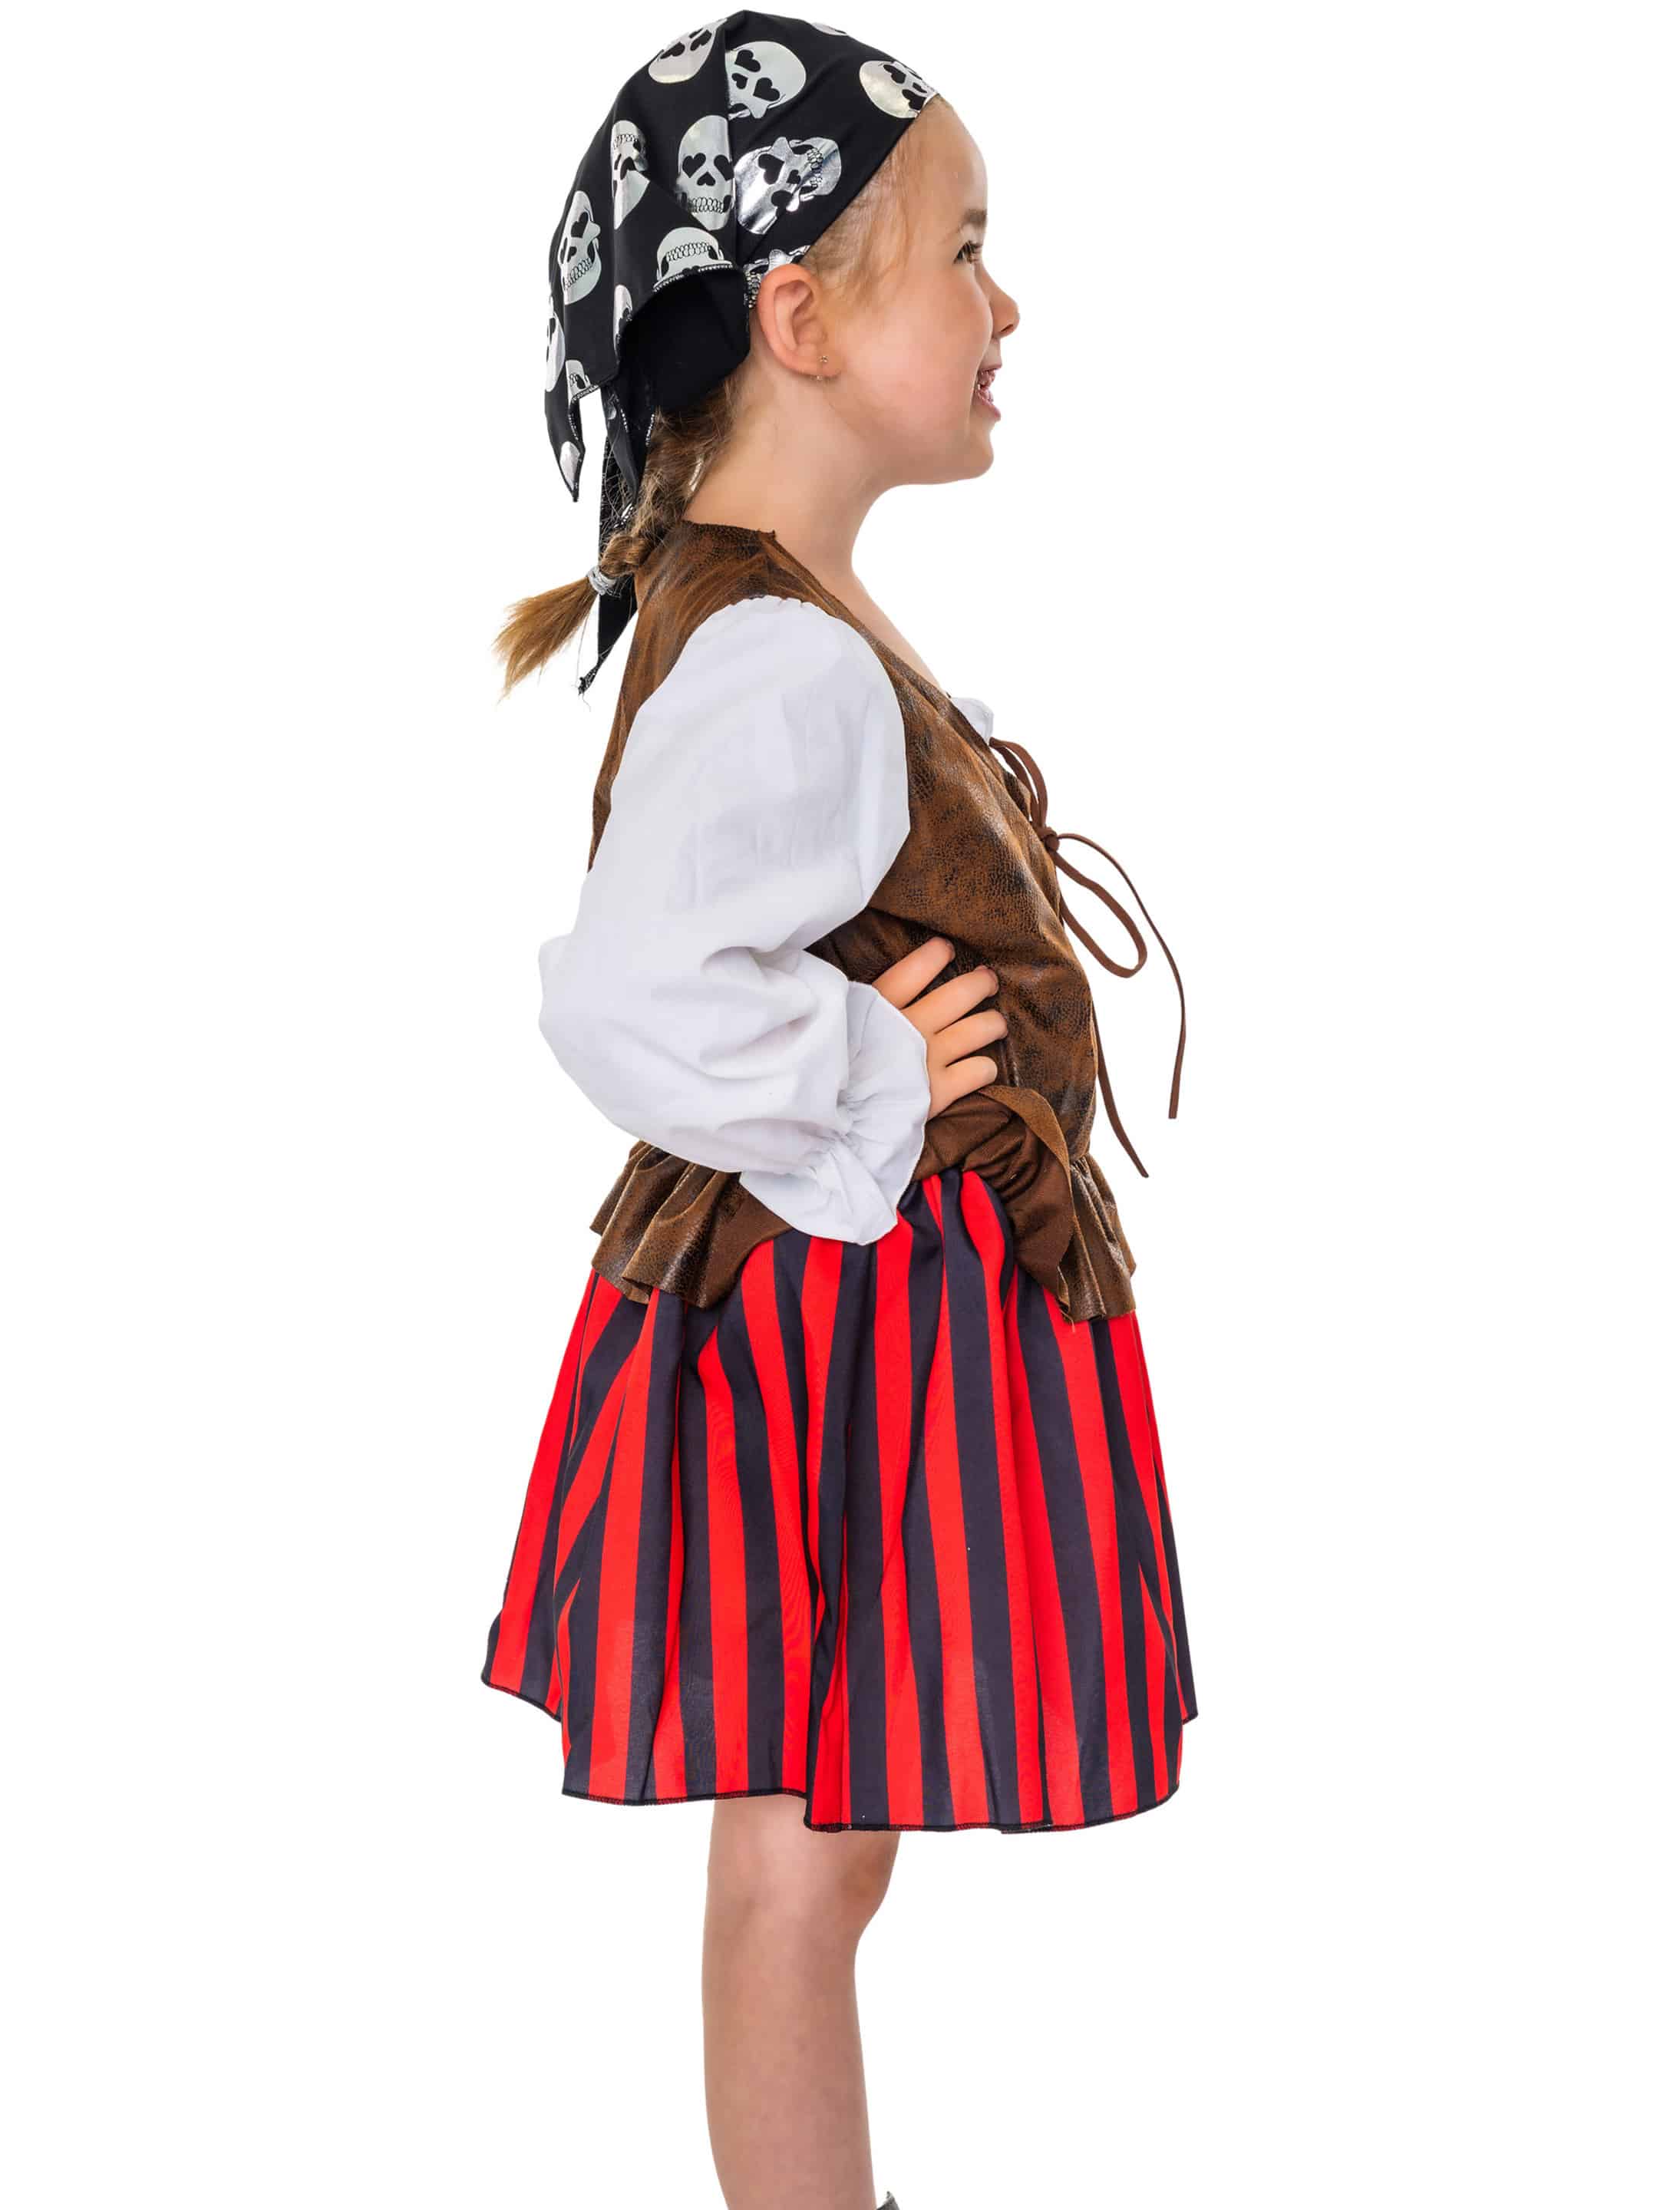 Kleid Piratin braun/rot 86-104